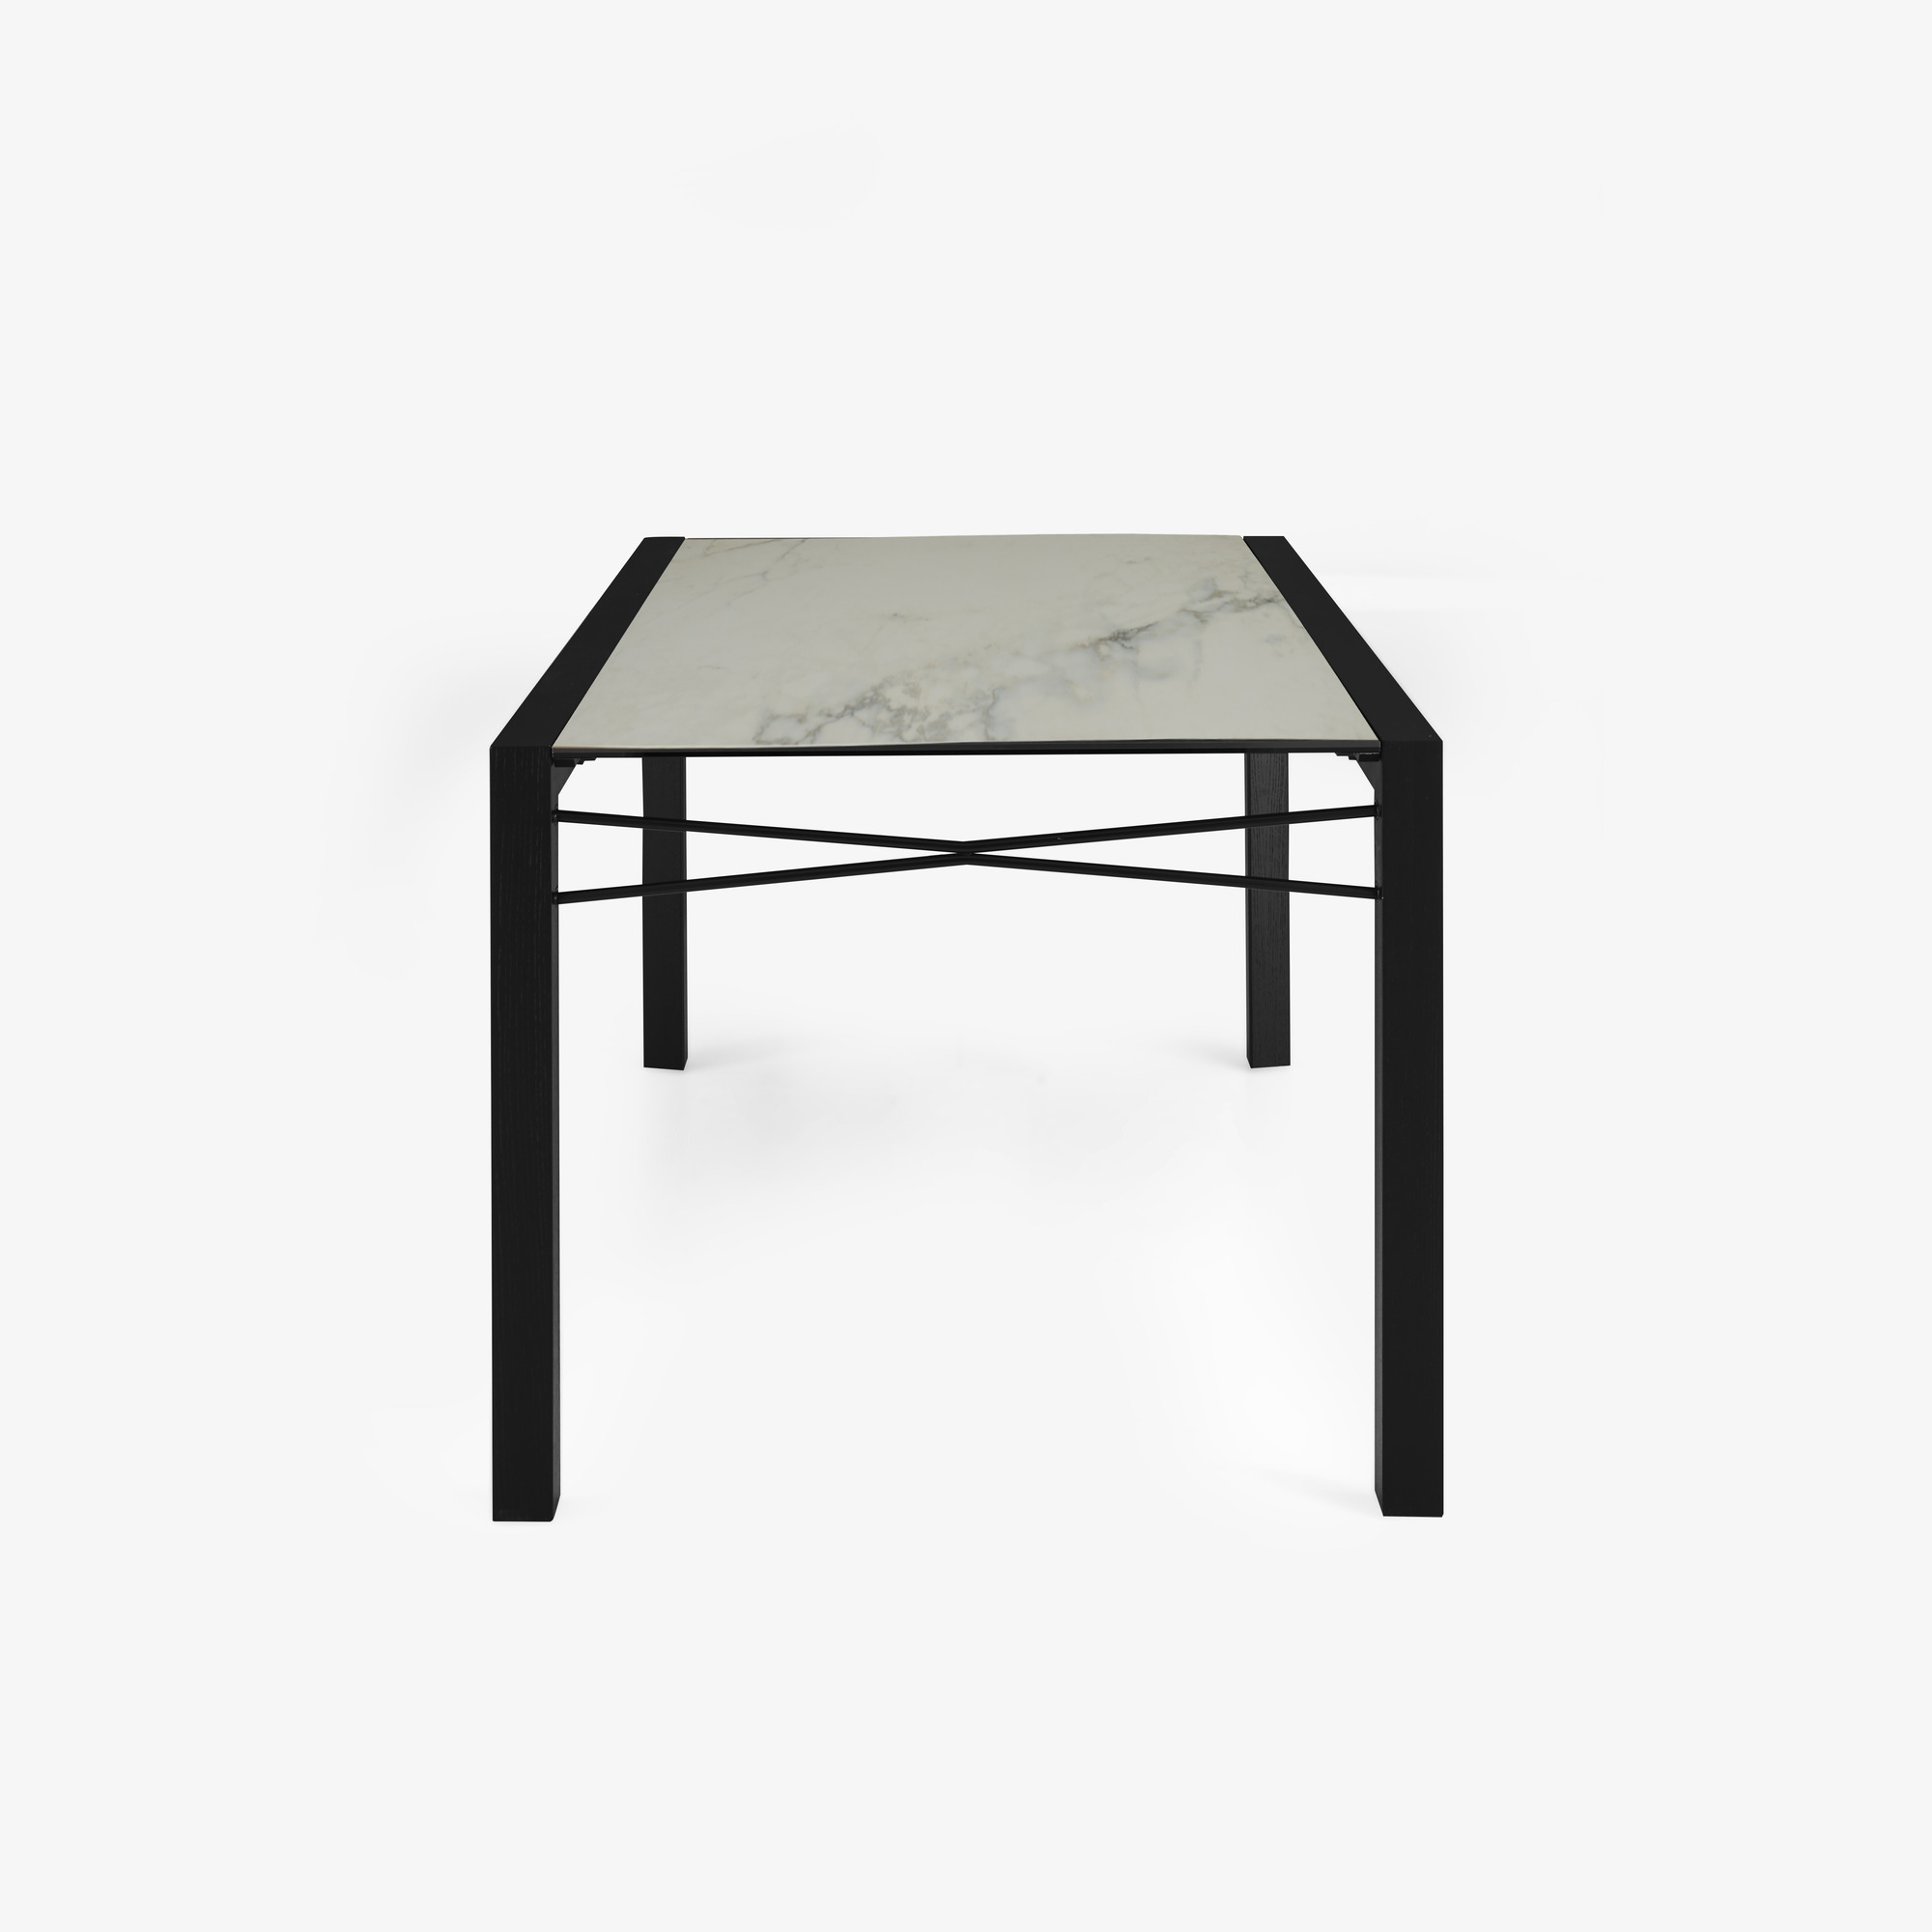 Image 餐桌 桌面由白色大理石效果的太空瓷制成 黑色白蜡木底座 3